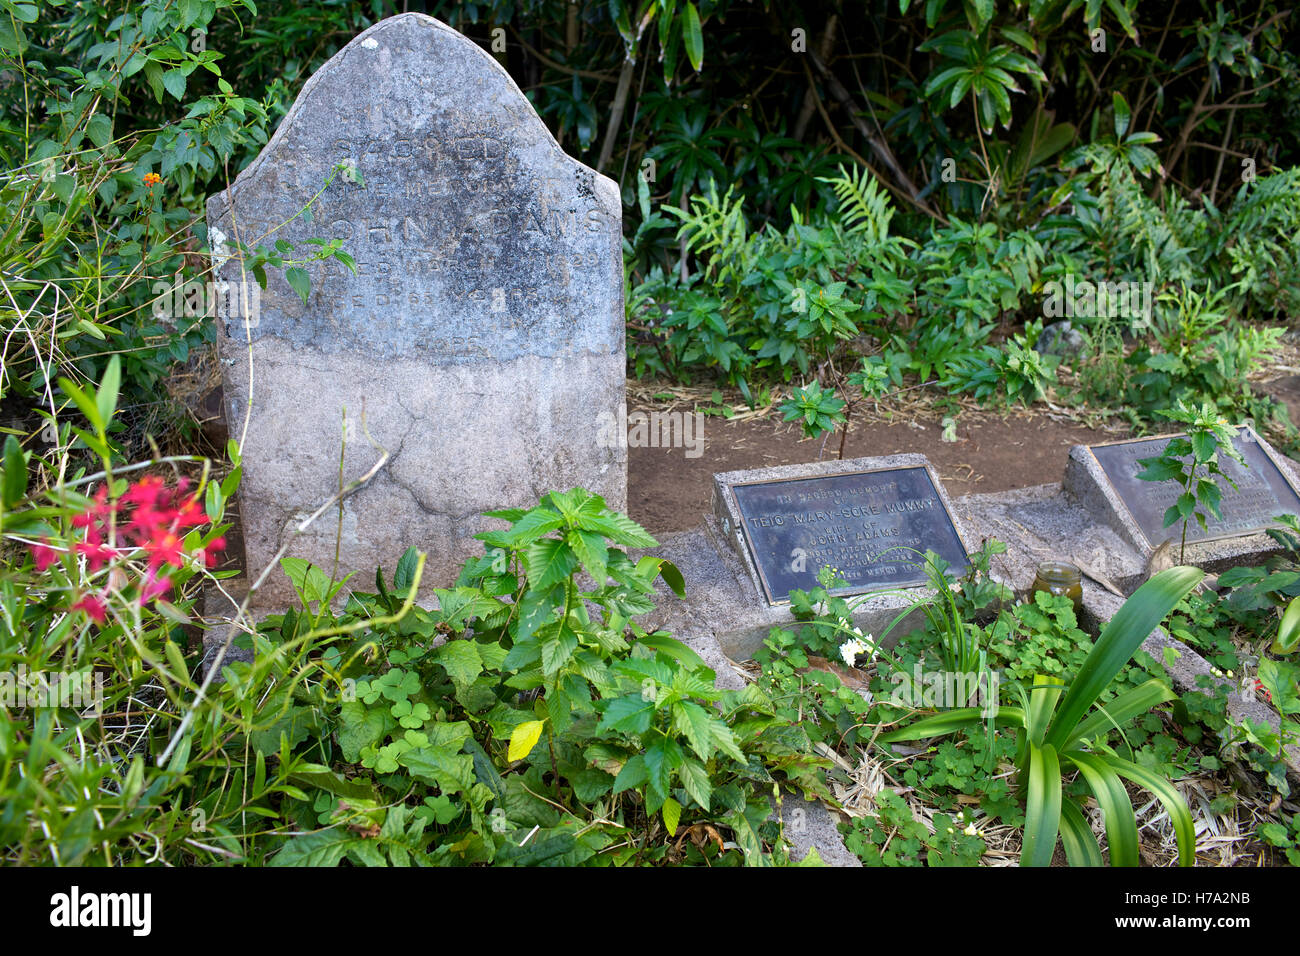 Pitcairn, Söhne von Meuterern! -01/06/2012 - Pitcairn / Pitcairn - das Grab von John Adams, einzige Überlebende nach "Kriegen" von Pitcairn - Olivier Goujon / Le Pictorium Stockfoto